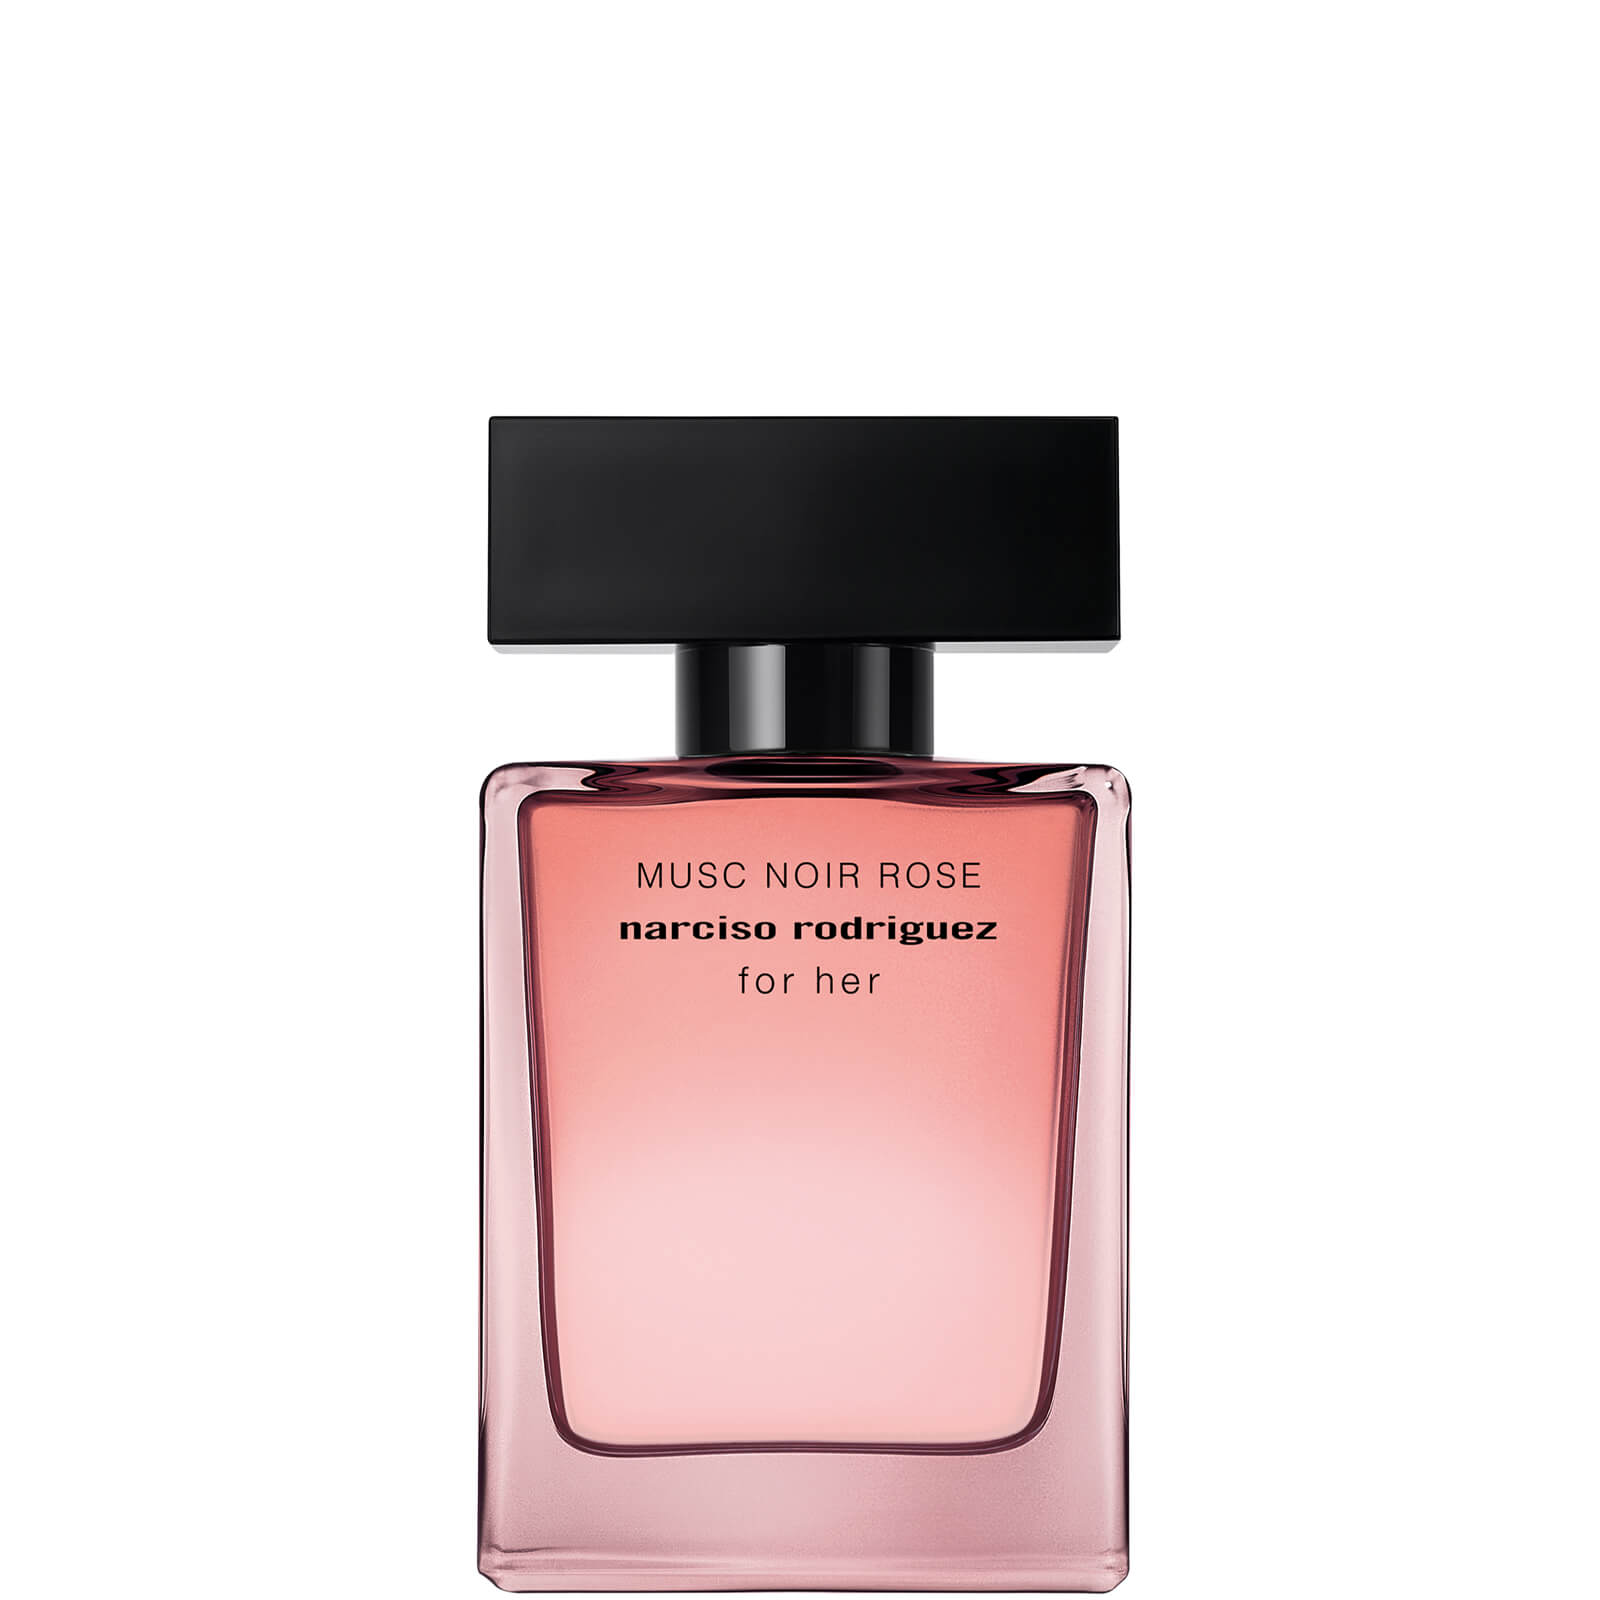 Image of Narciso Rodriguez for Her Musc Noir Rose Eau de Parfum 30ml